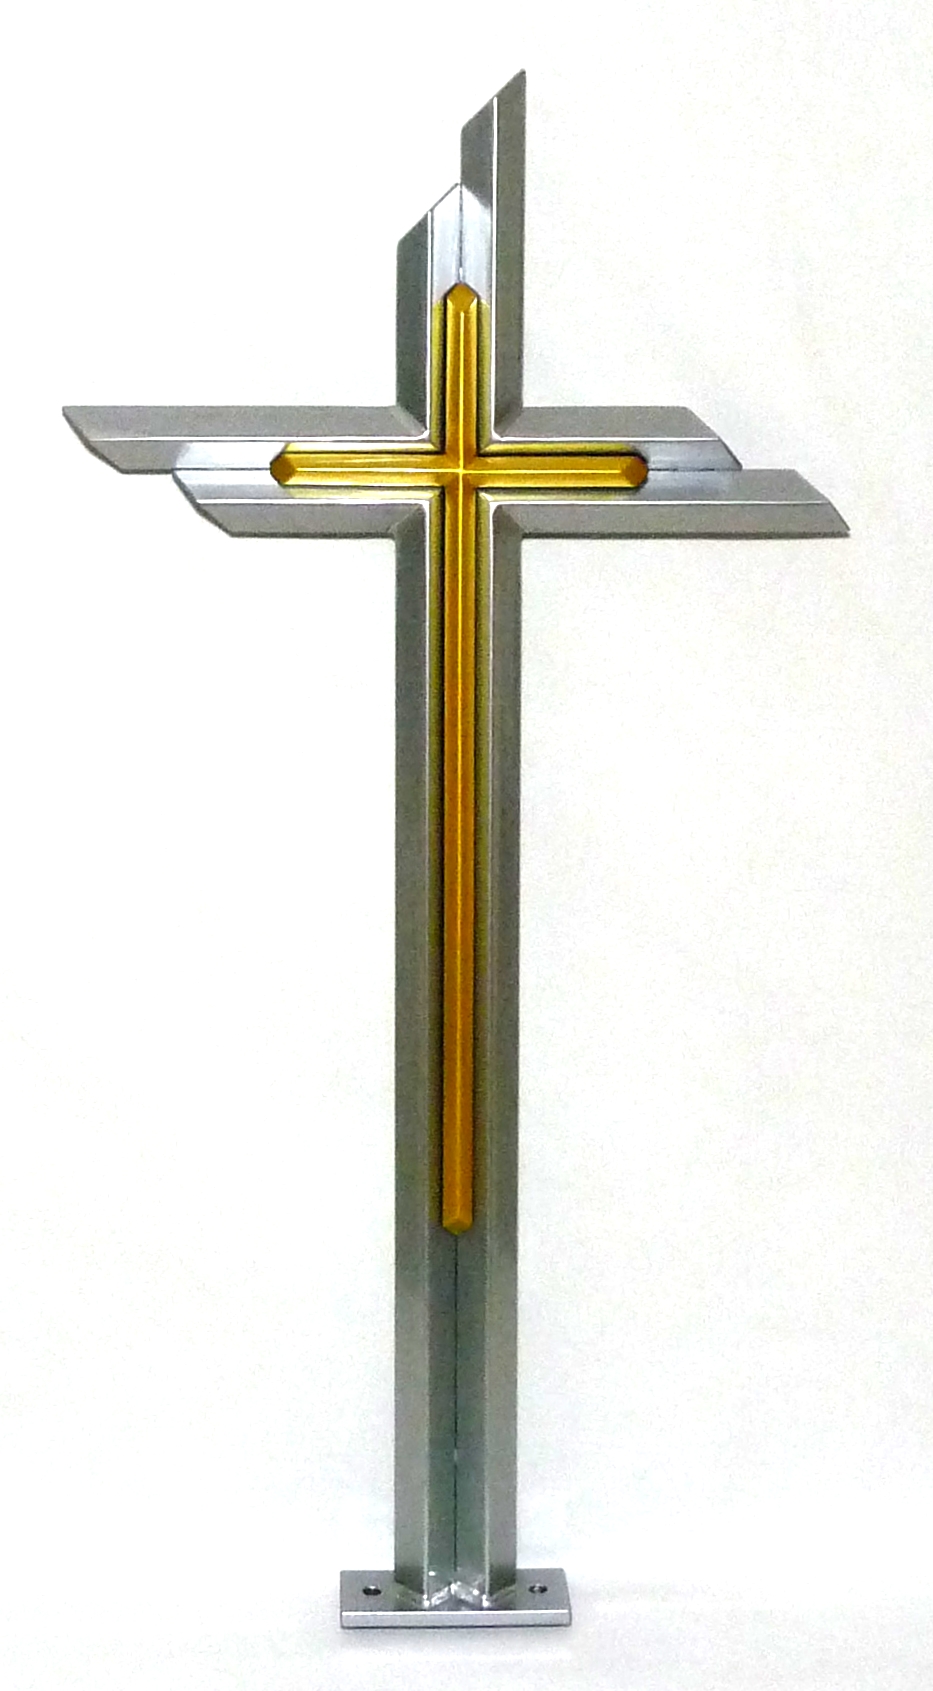 Ocelové kříže hranolové v nerez barvě